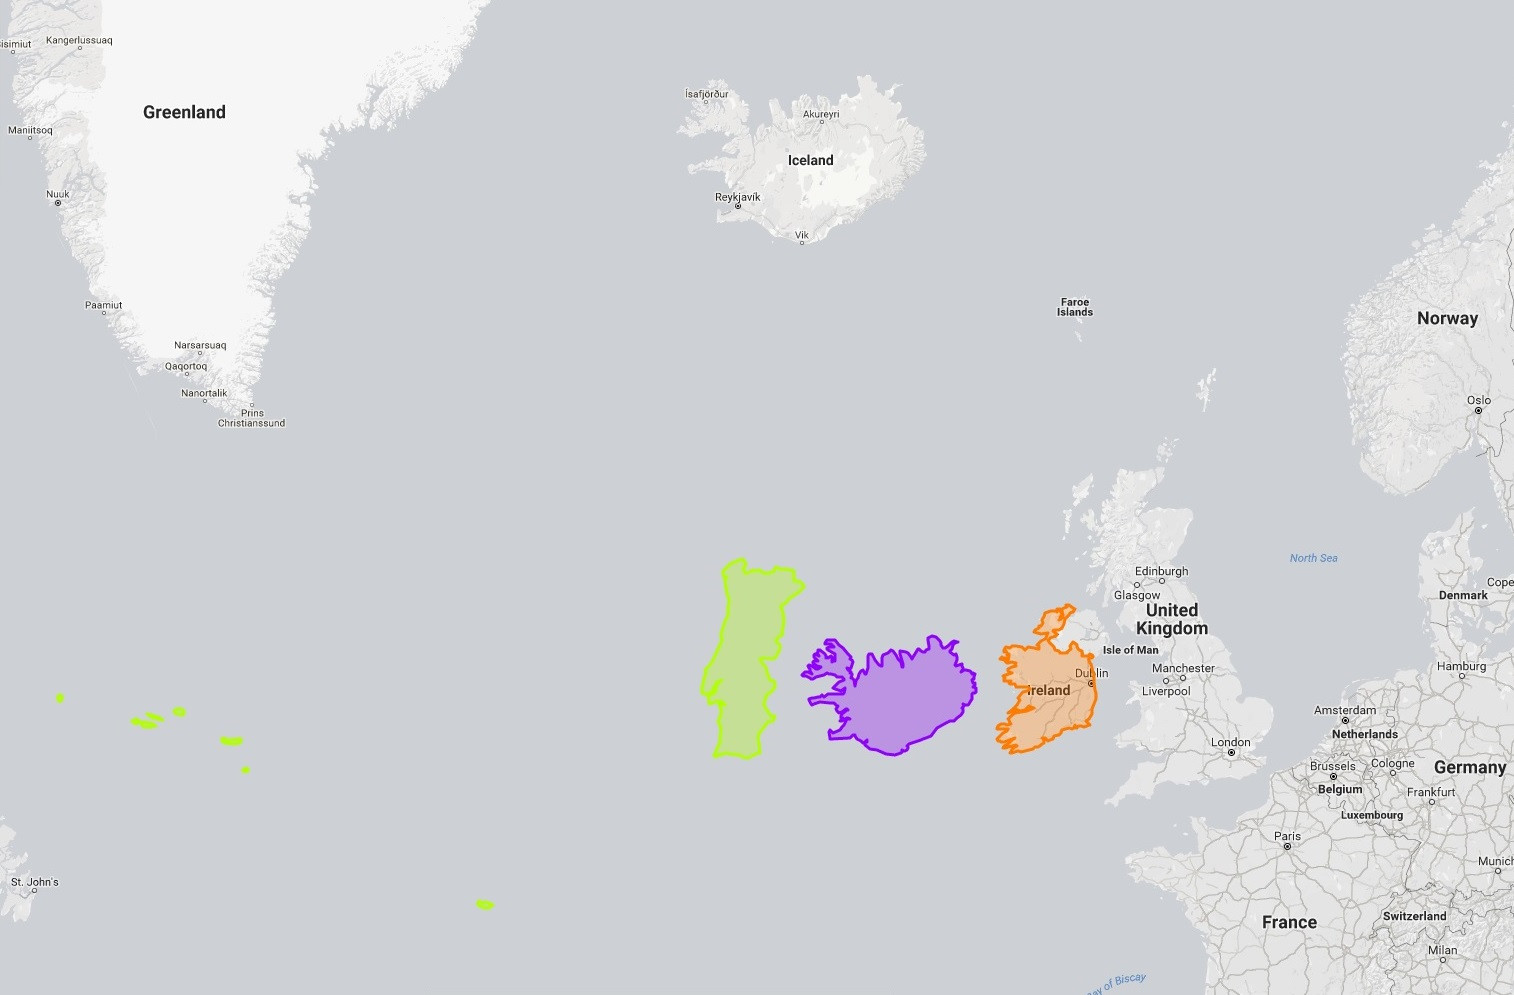 6 portugal e islândia ao lado da irlanda, no sítio dela.jpg